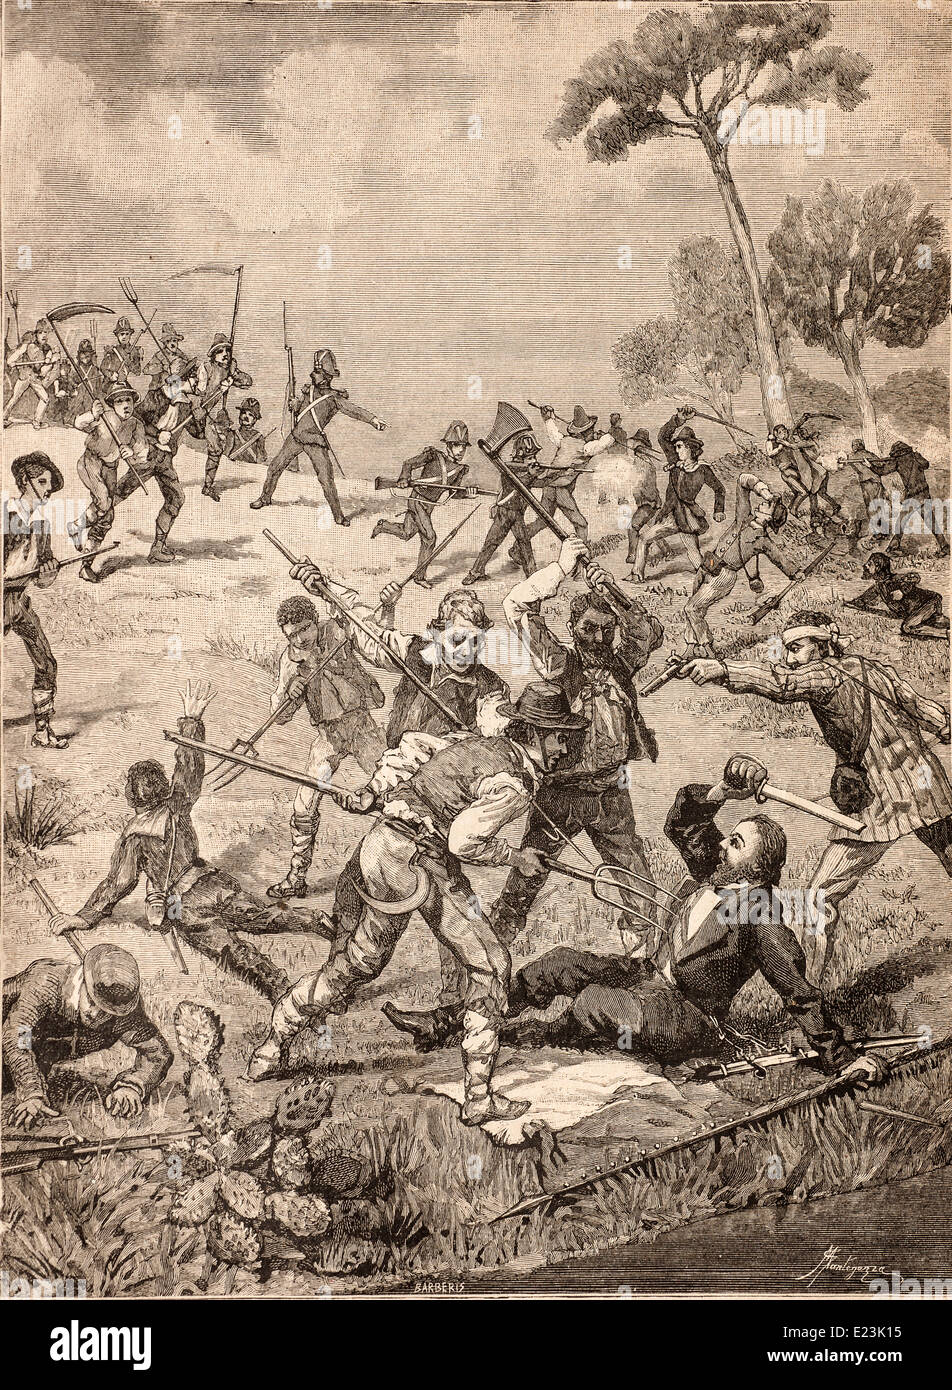 Giuseppe Mazzini du livre de Jessie W. Mario de vie de Mazzini. Voyage de Sapri (1857)Pisacane agressé par les agriculteurs Banque D'Images